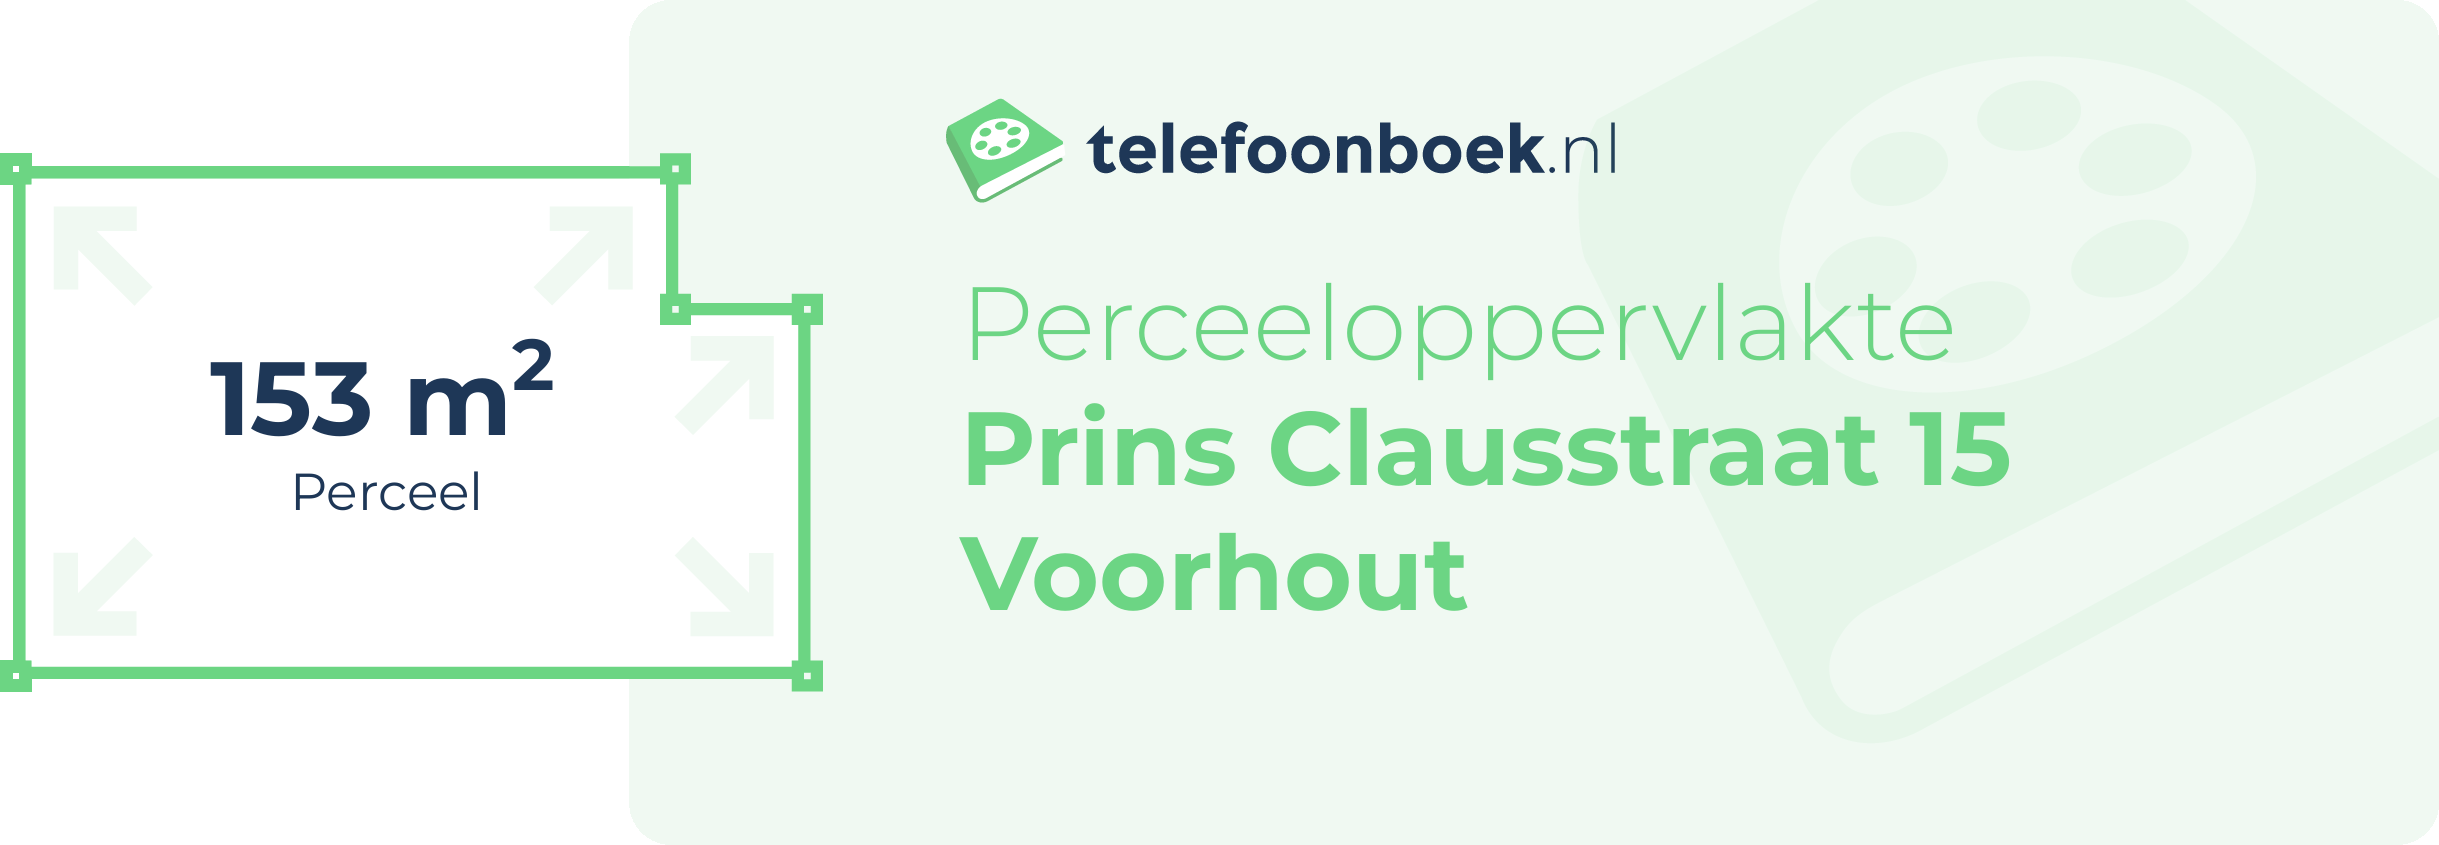 Perceeloppervlakte Prins Clausstraat 15 Voorhout